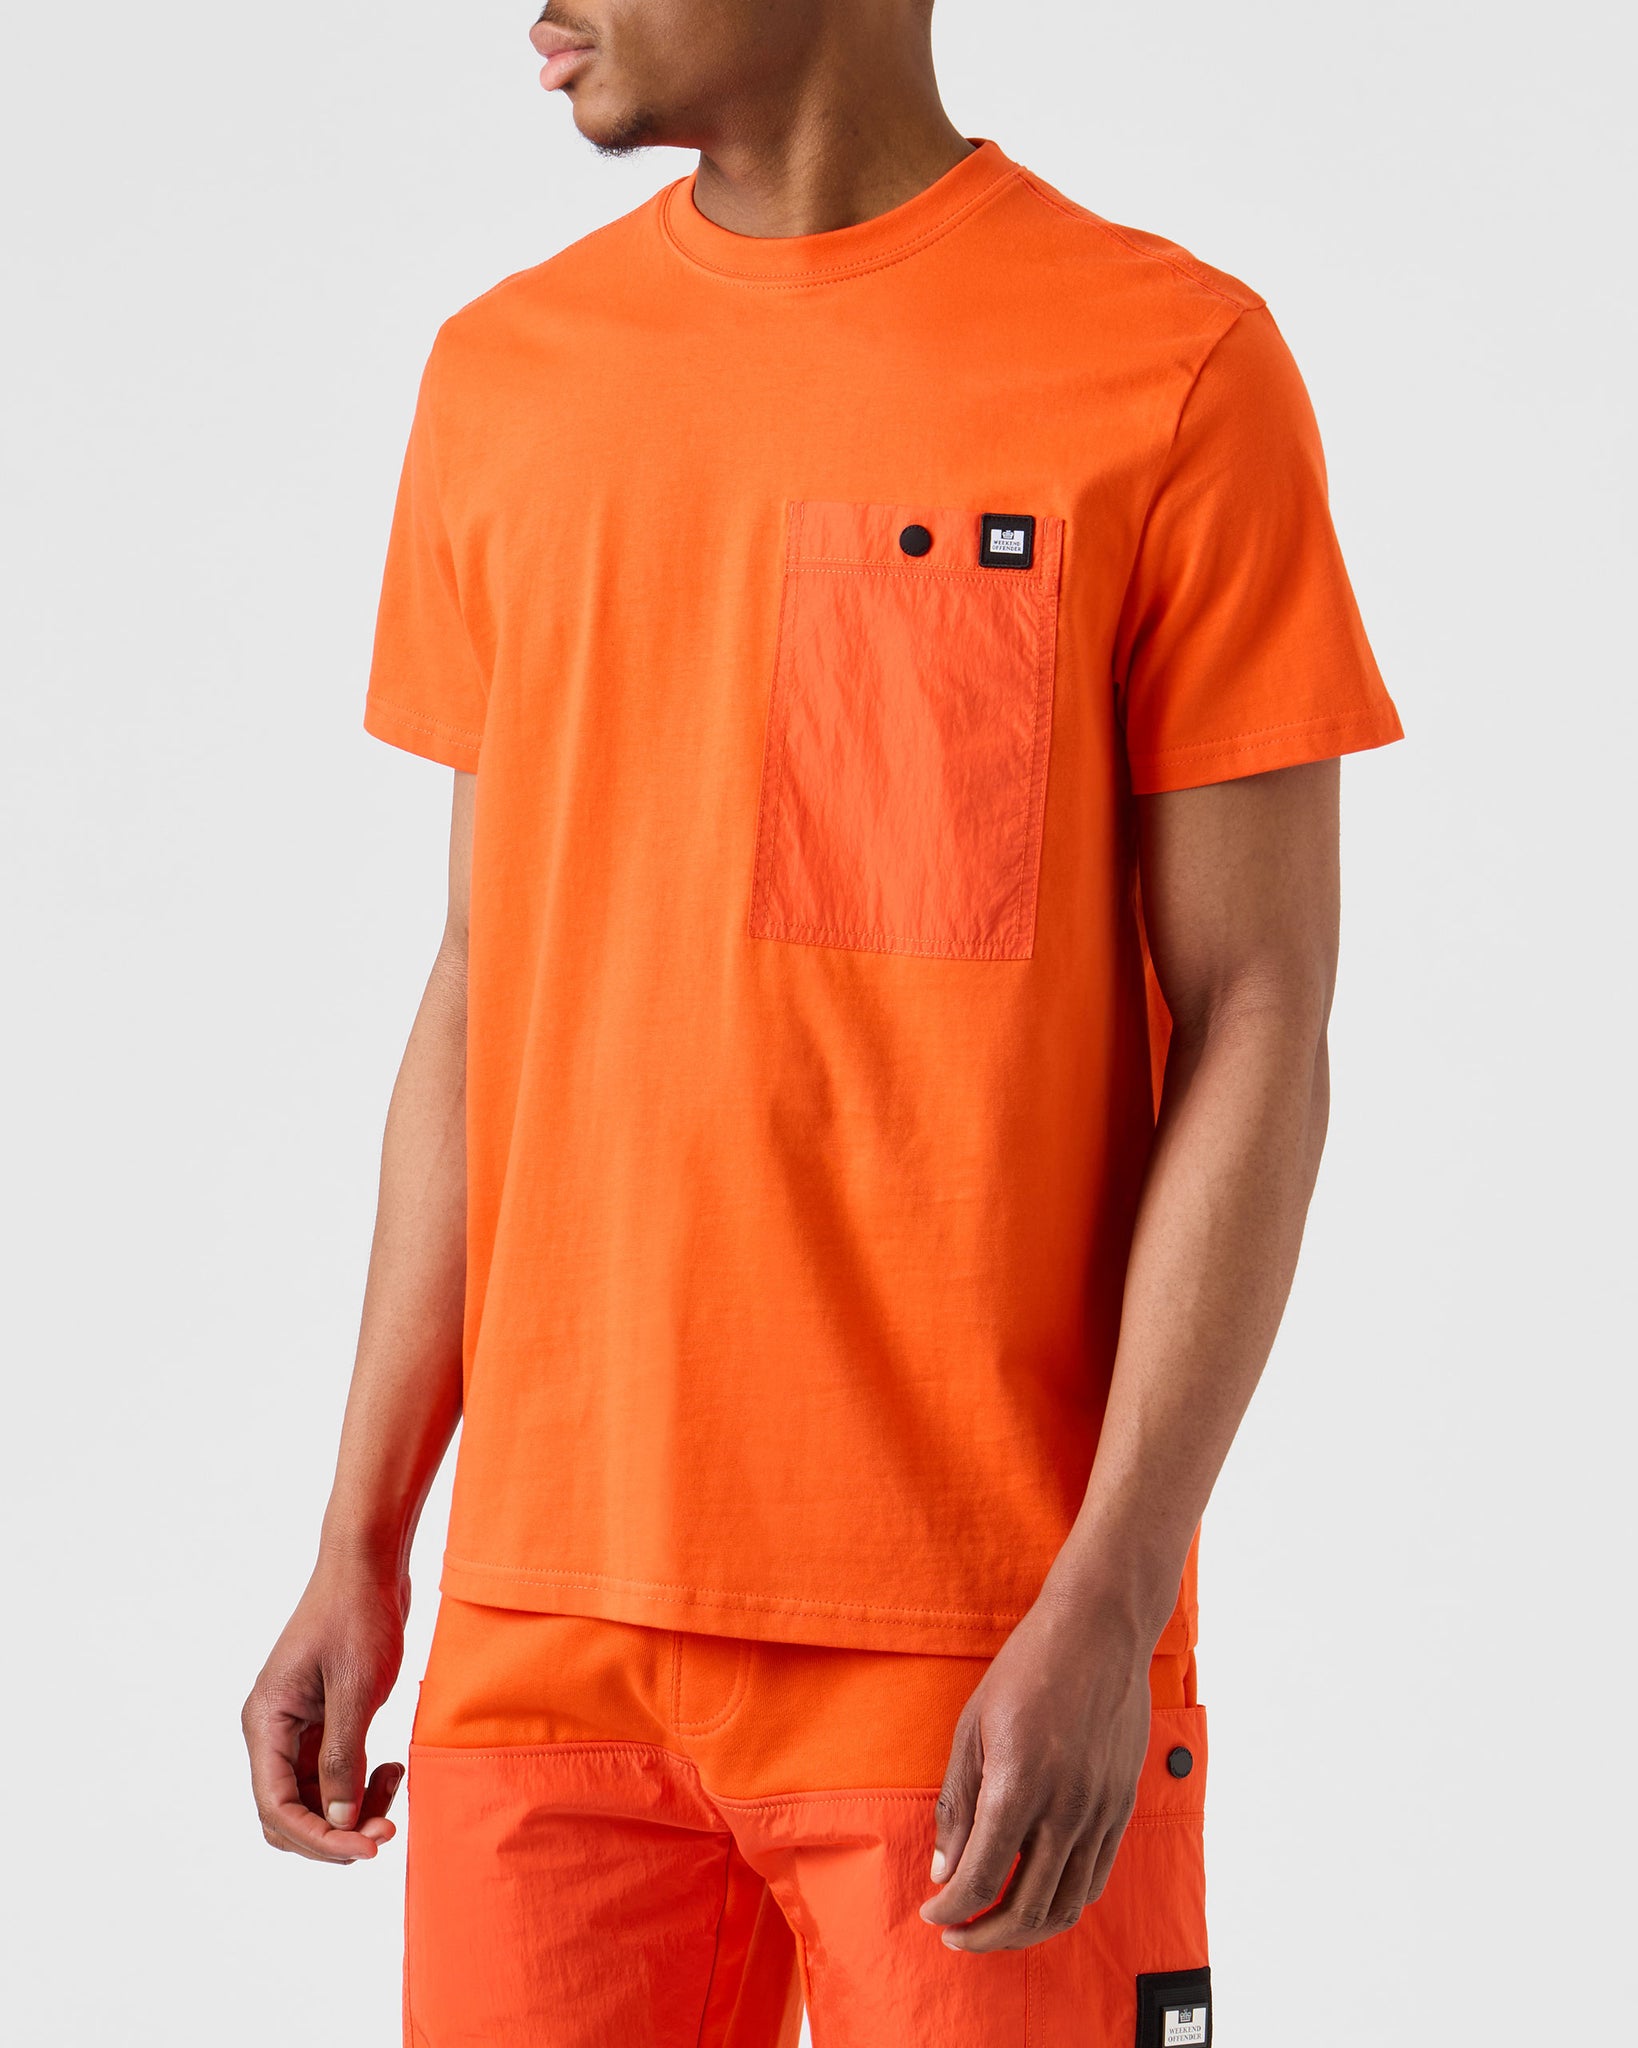 Tabiti Pocket T-Shirt Orange Fizz